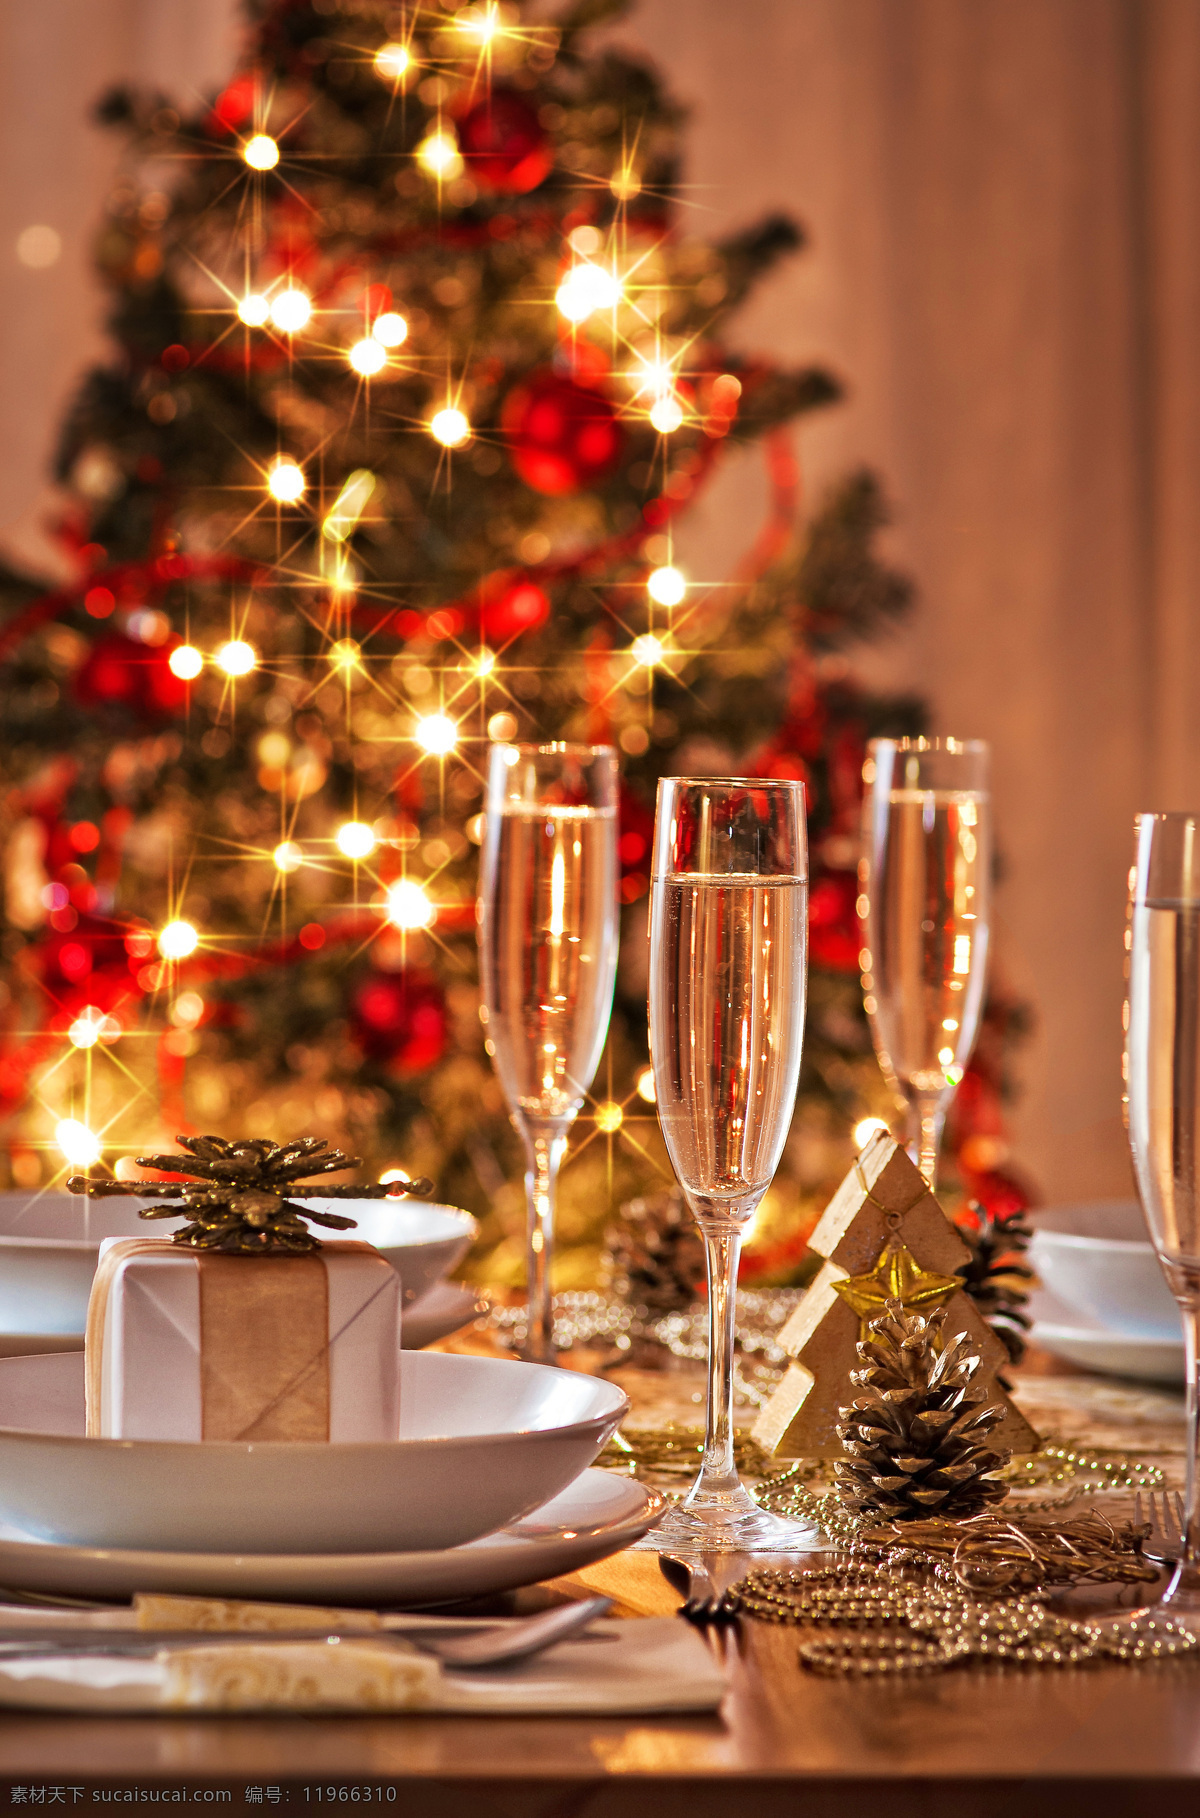 圣诞 礼物 香槟 圣诞礼物 礼包 圣诞节香槟 美酒 高脚杯 松果 节日庆典 生活百科 棕色